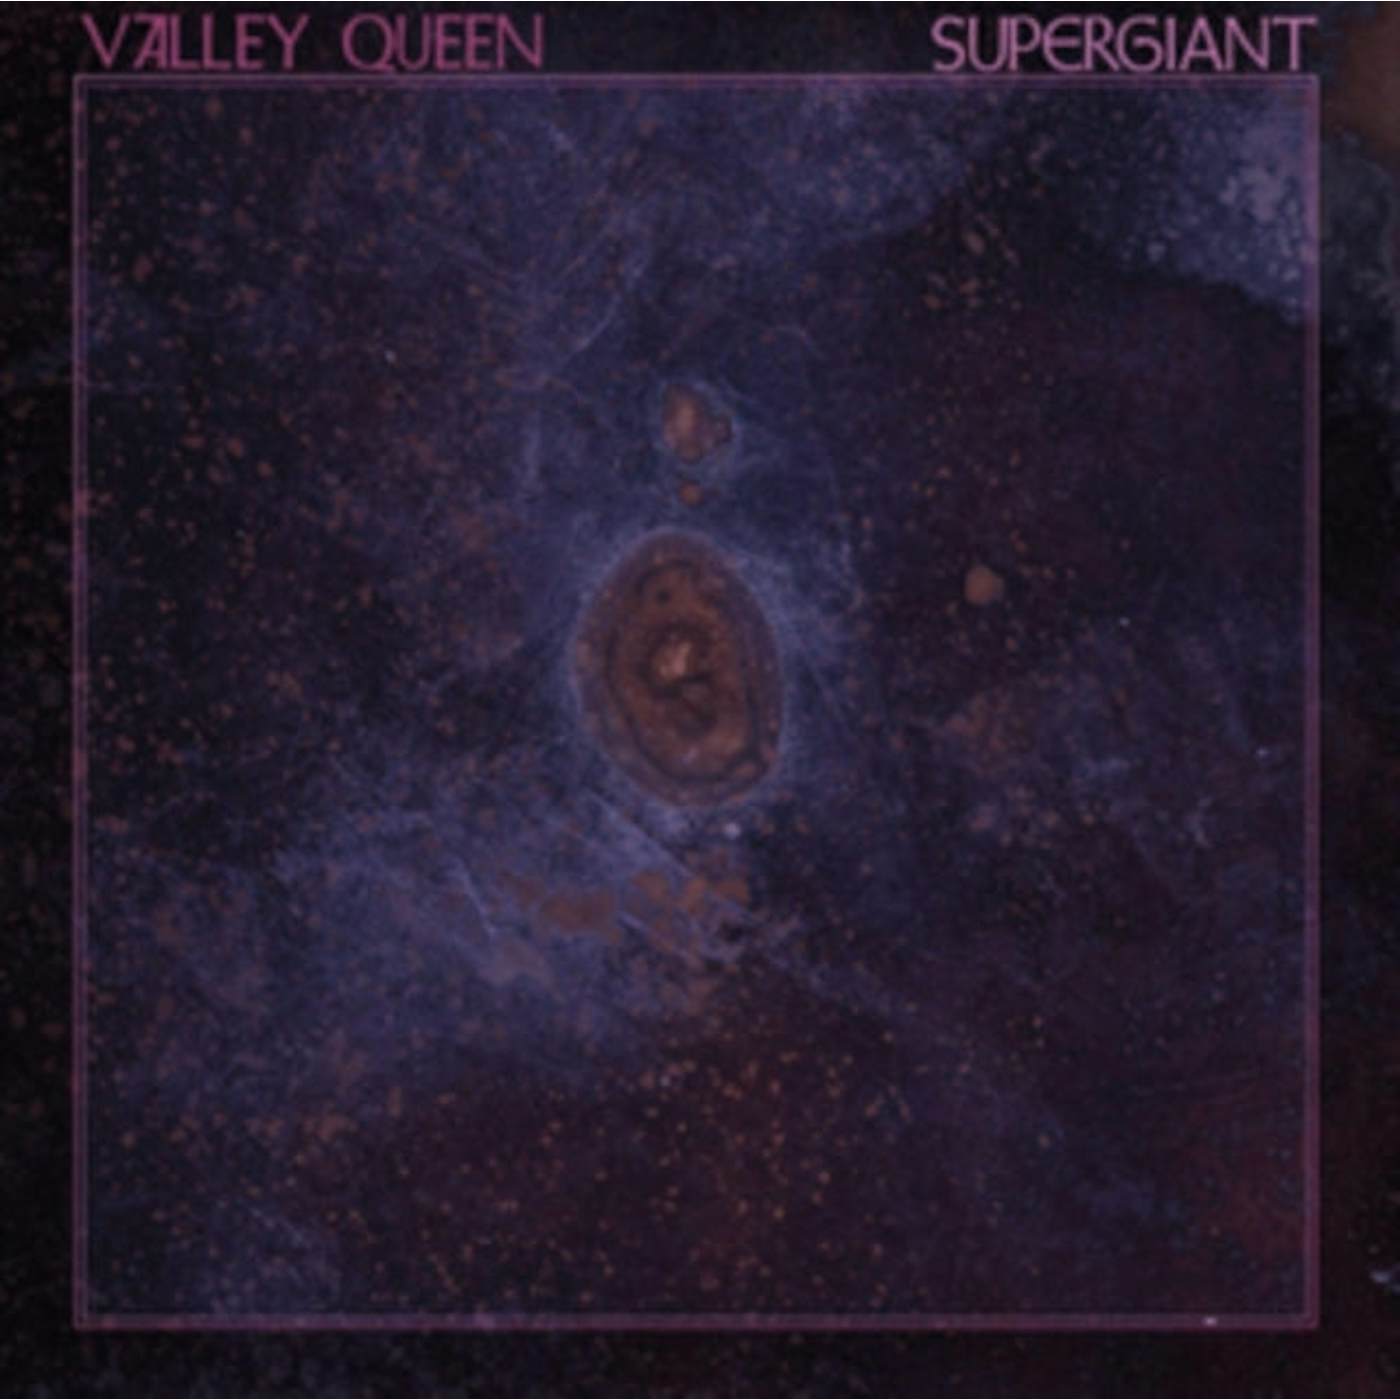 Valley Queen CD - Supergiant